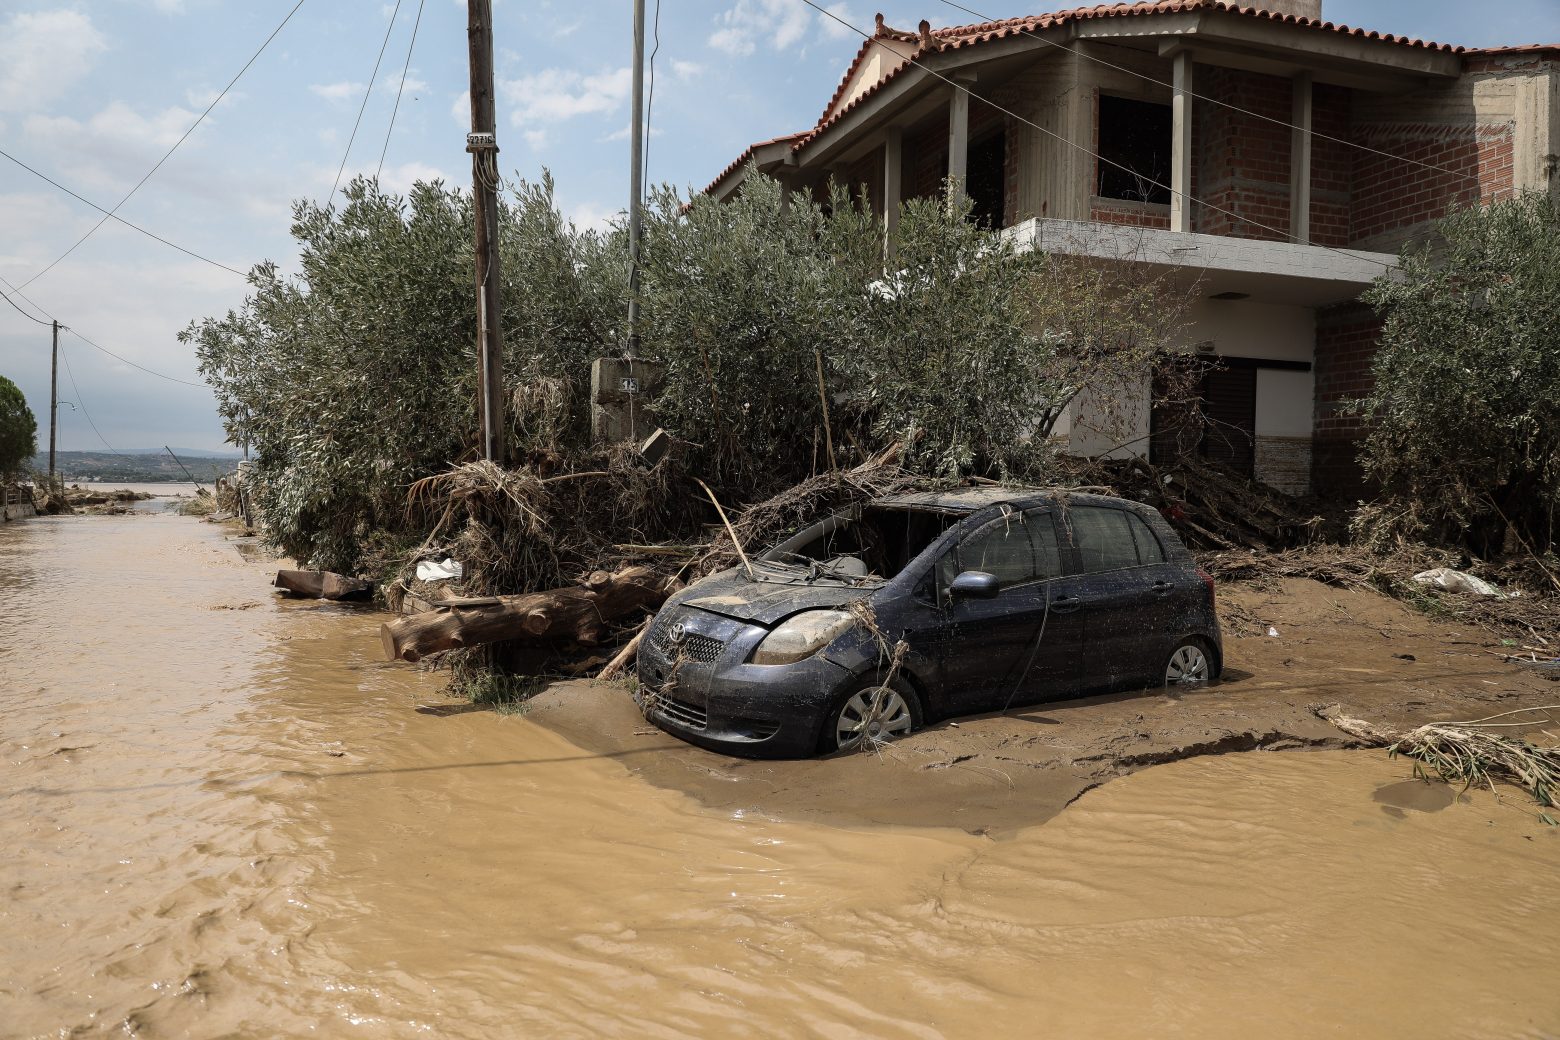 ΕΚΠΑ - Νέα έρευνα - Ποιες περιοχές κινδυνεύουν με διάβρωση και πλημμύρες σε Αττική, Εύβοια και Πελοπόννησο